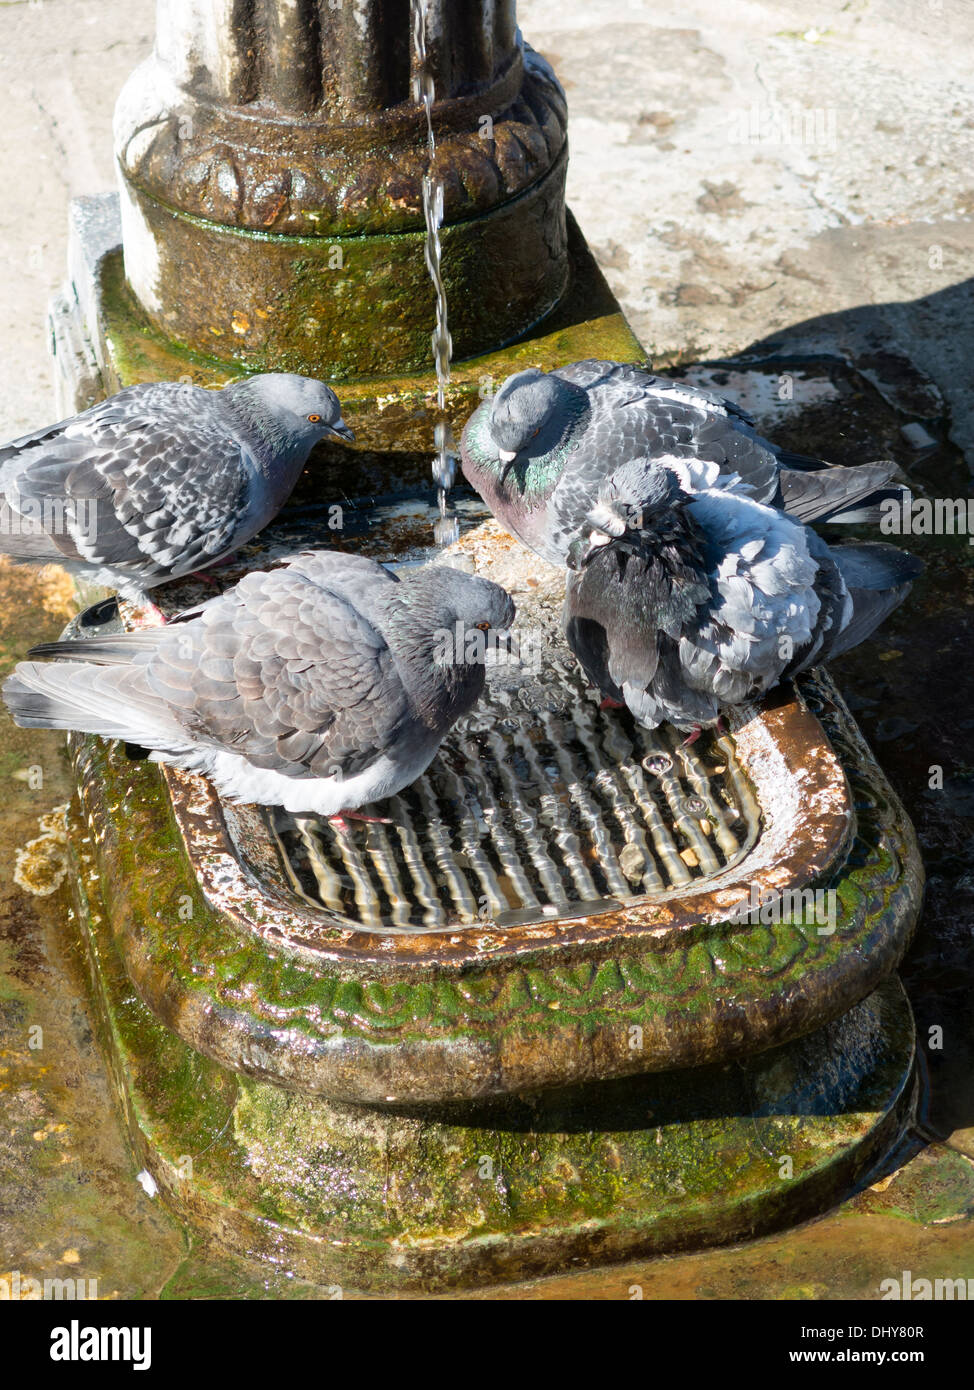 Tauben baden in alten antiken Brunnen, Venedig, Italien Stockfoto